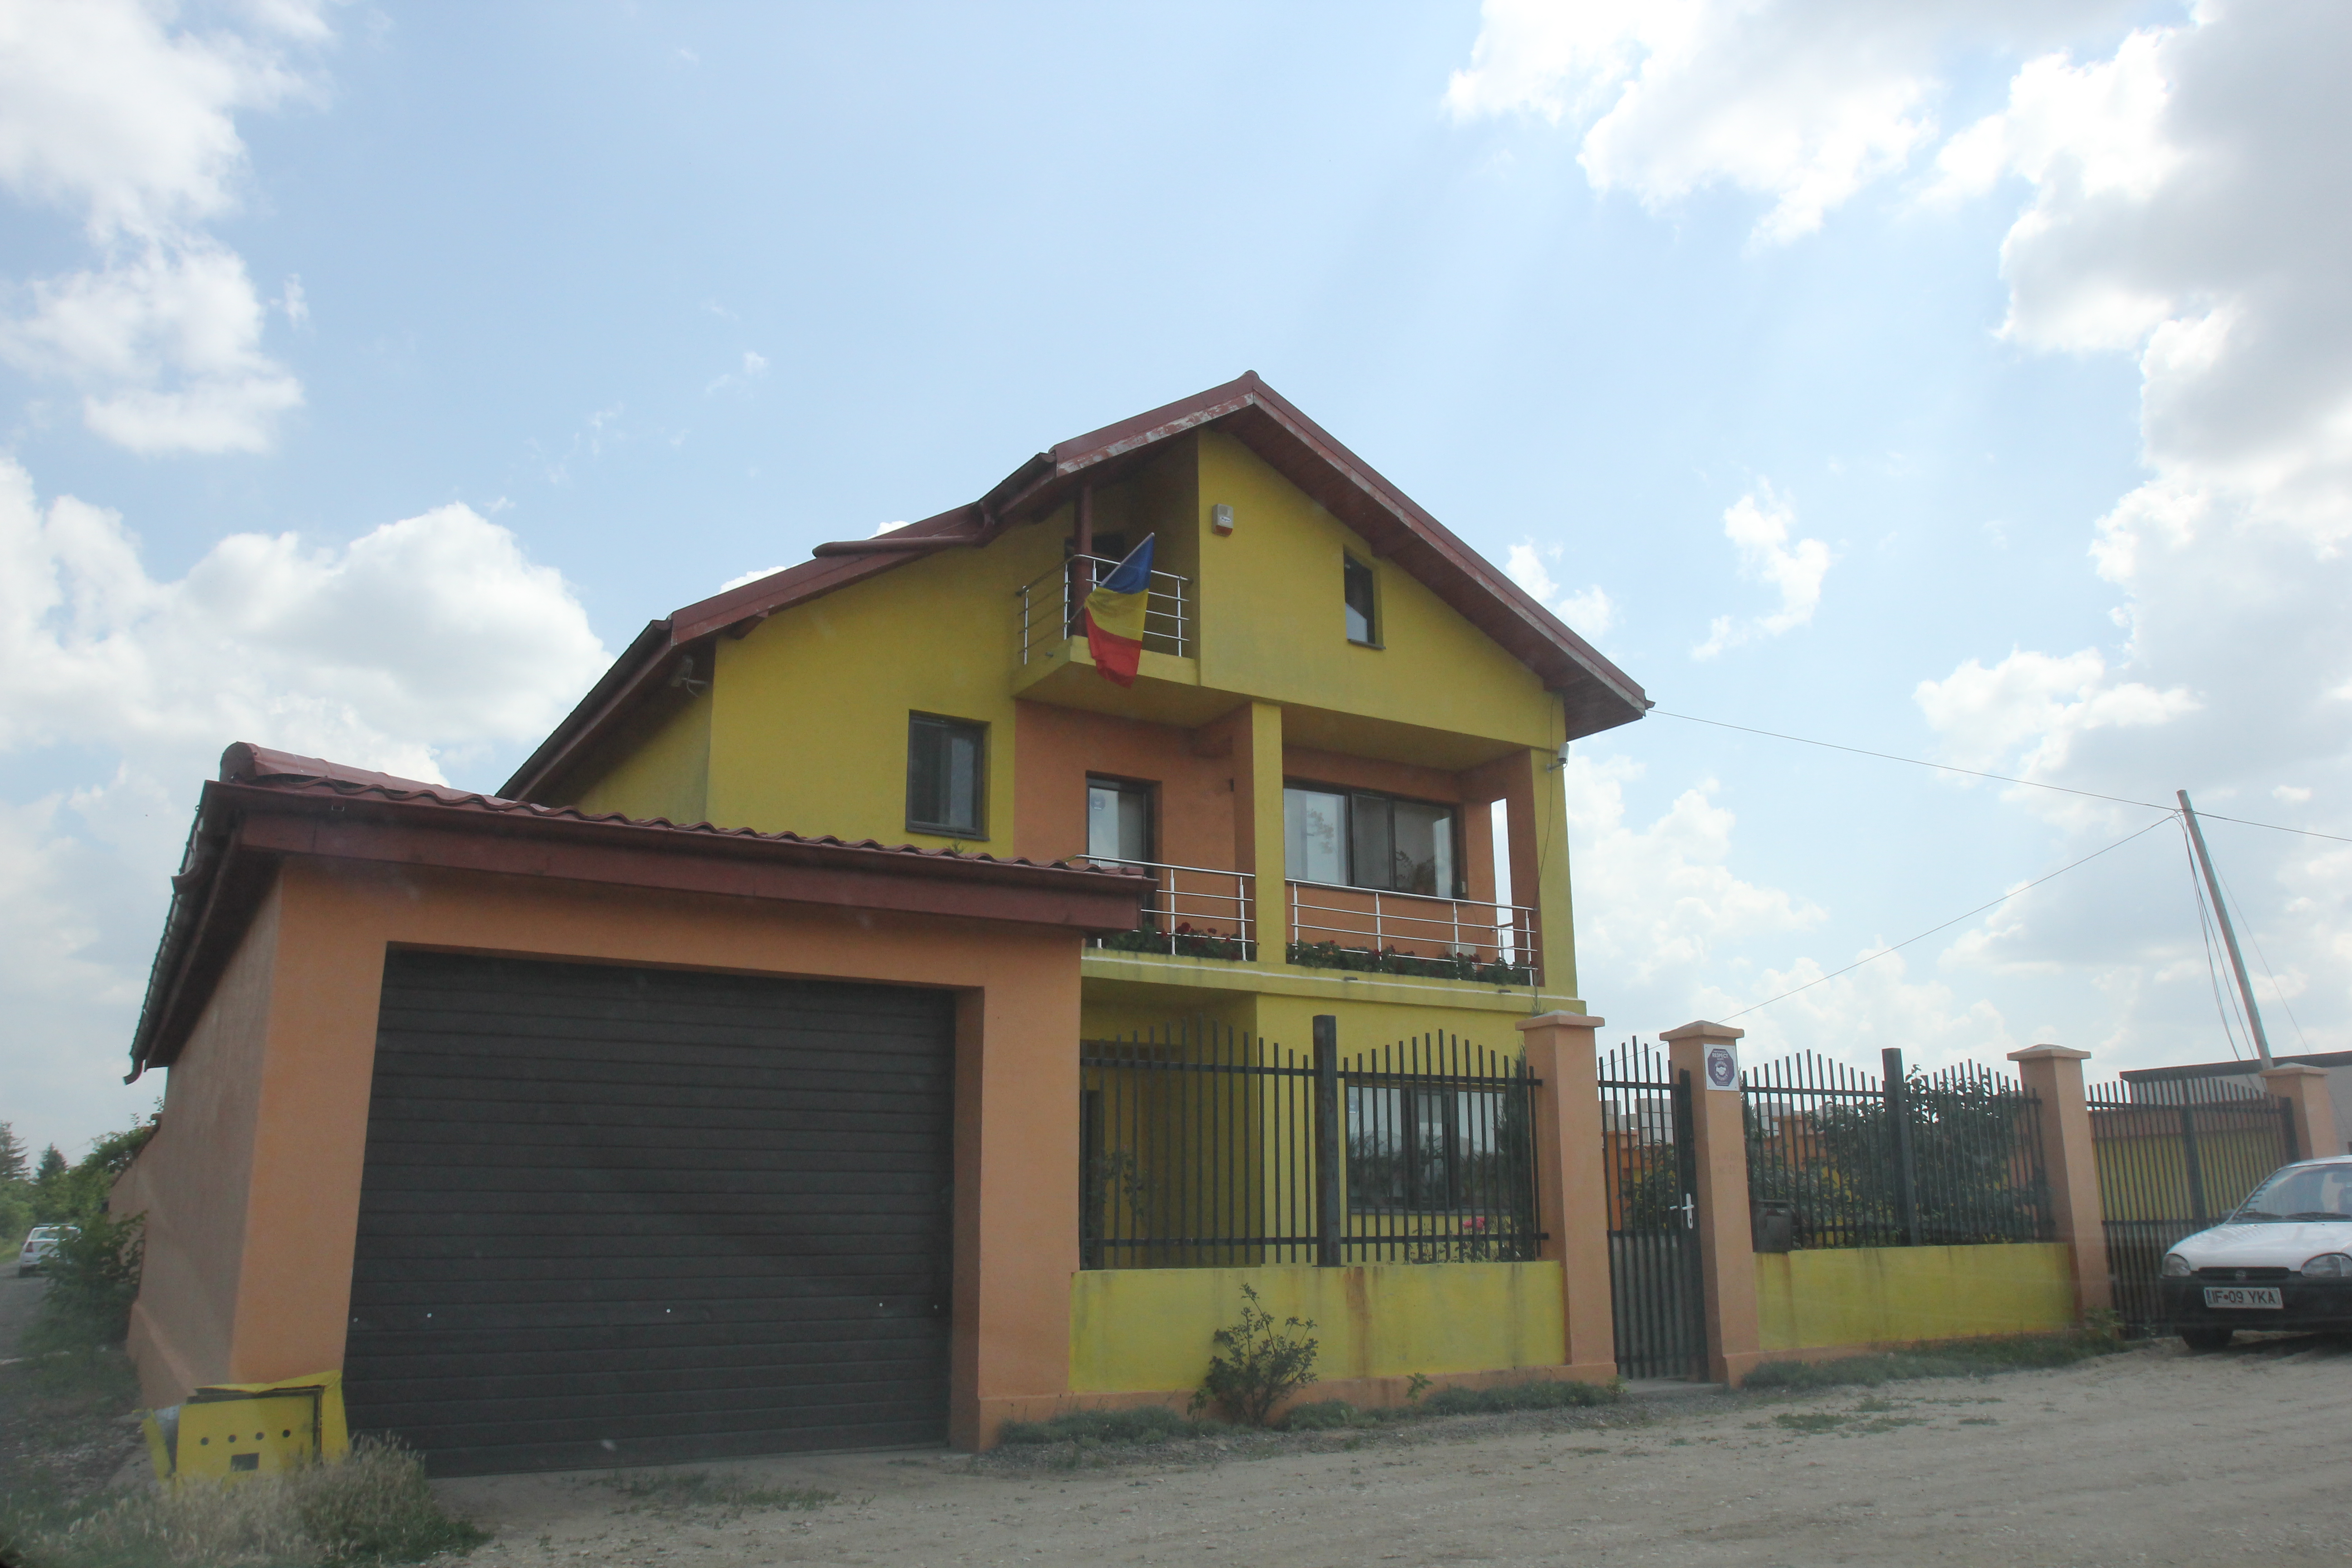 Costica Varzaru si-a construit o vila somptuoasa la marginea Bucurestiului